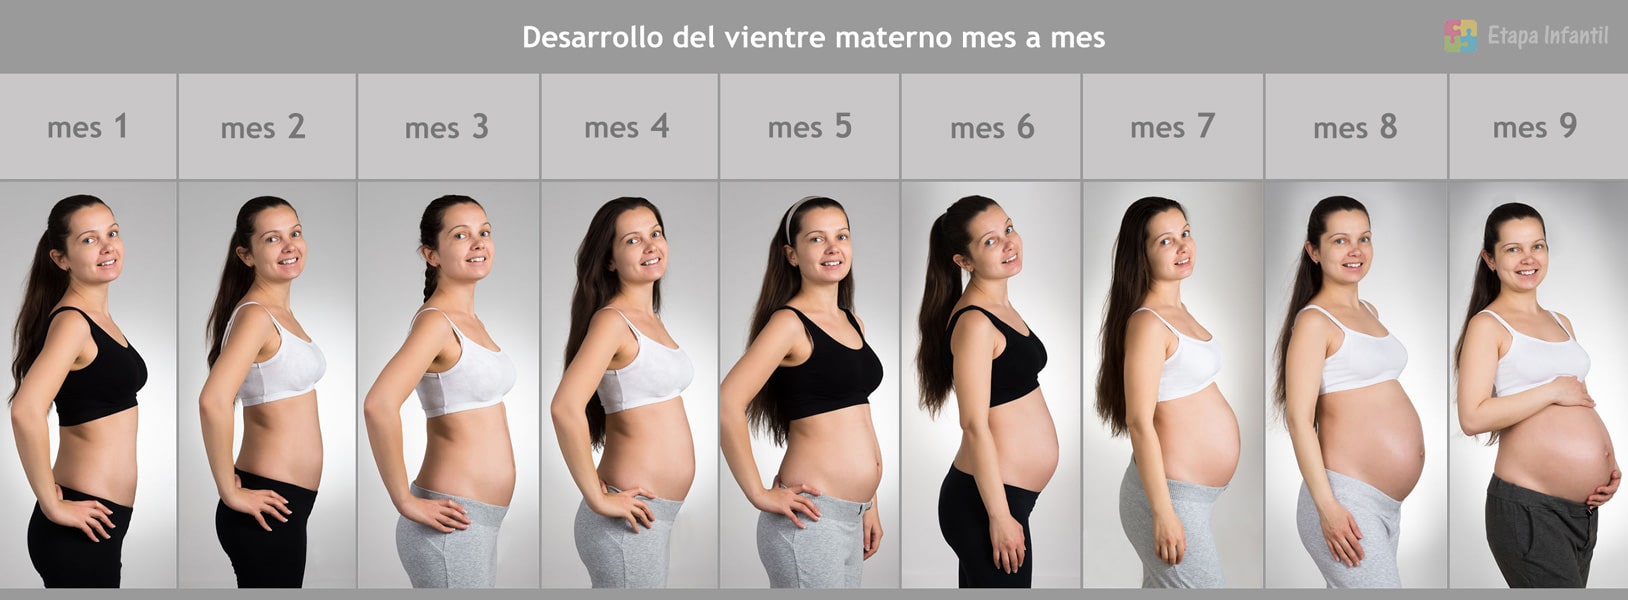 Desarrollo-mes-a-mes-barriga-embarazo-1.jpg